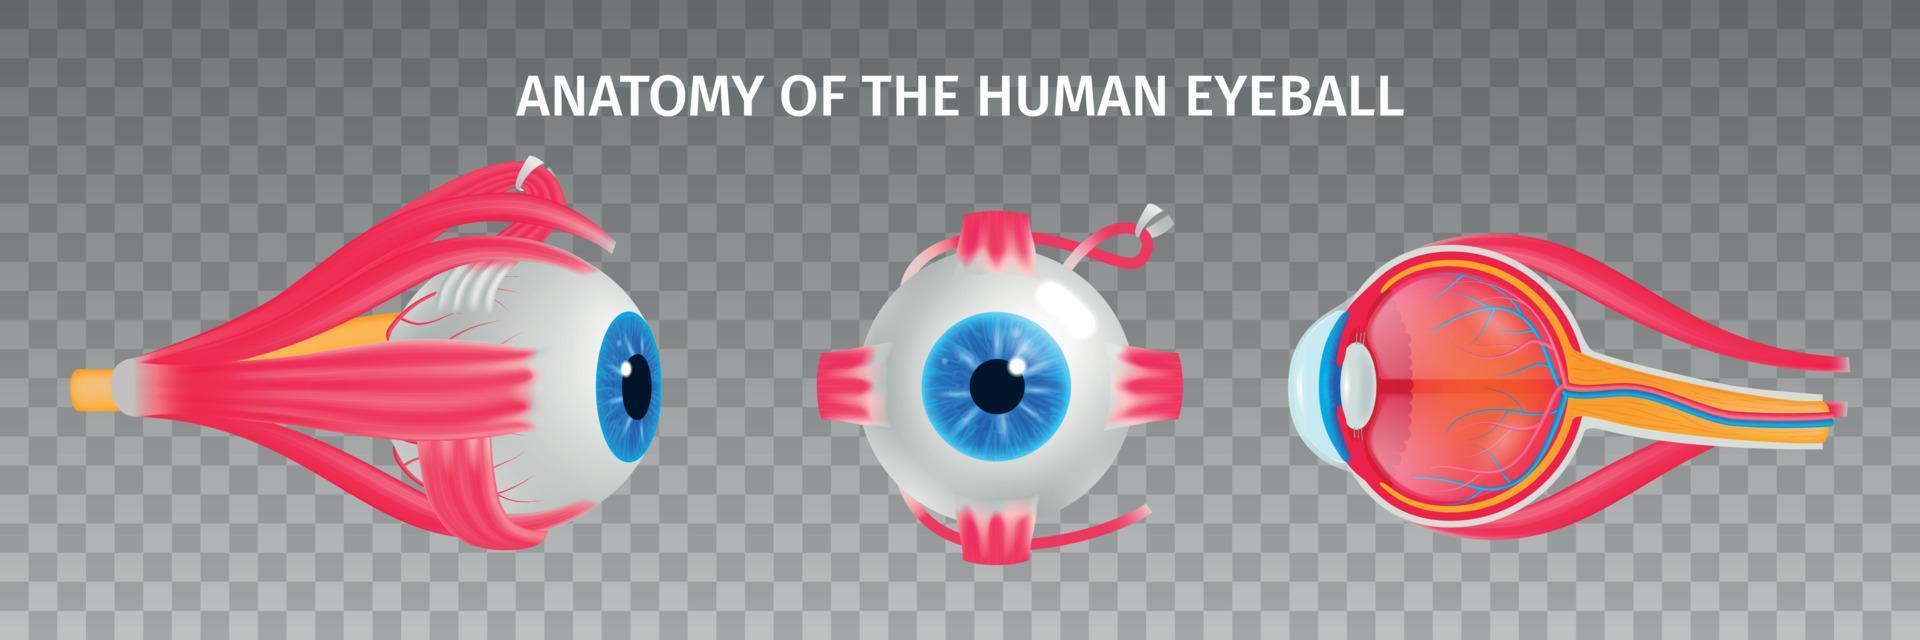 Anatomie des menschlichen Auges transparentes Set vektor